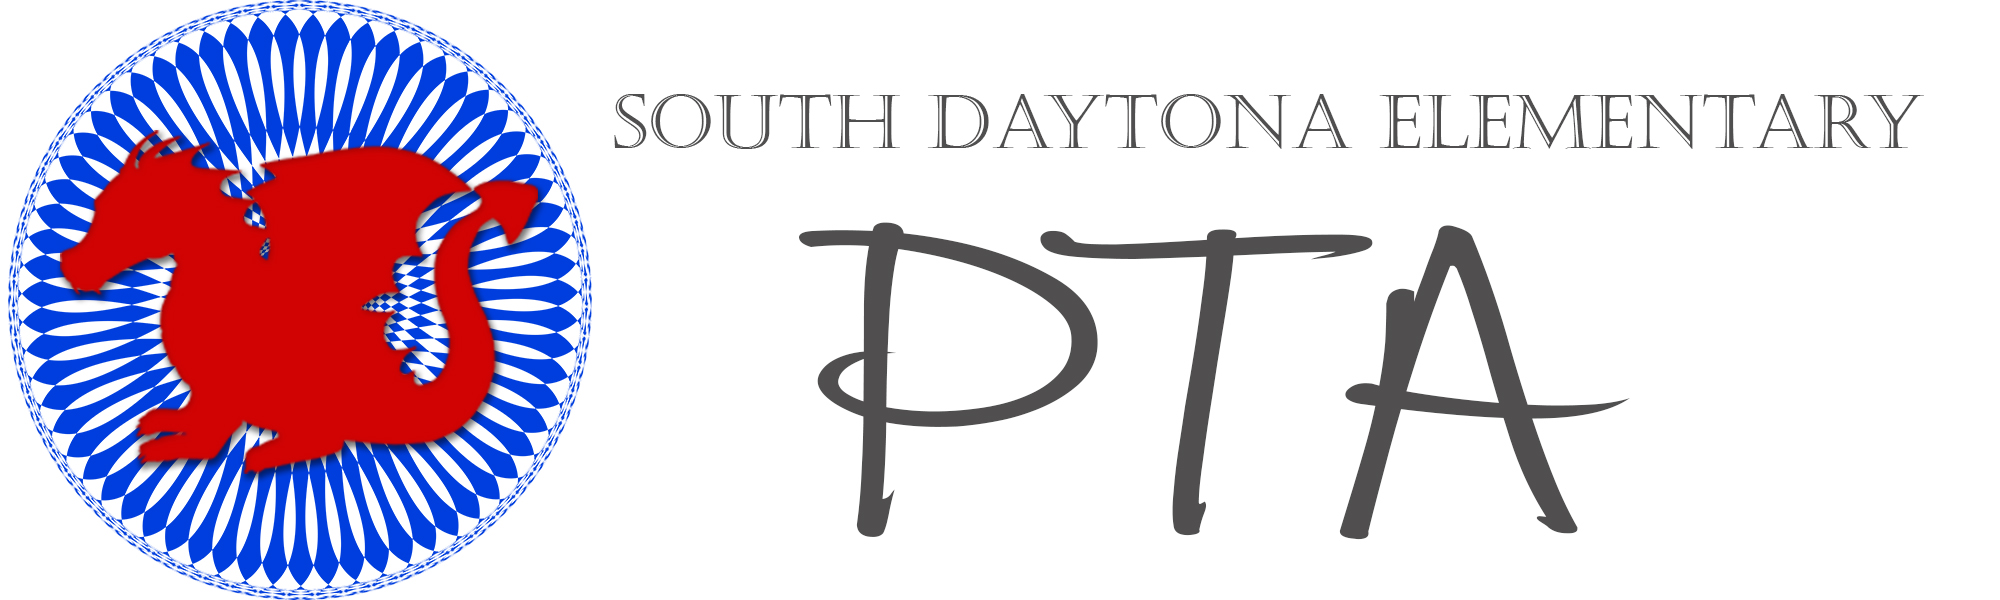 South Daytona Elementary Dragons